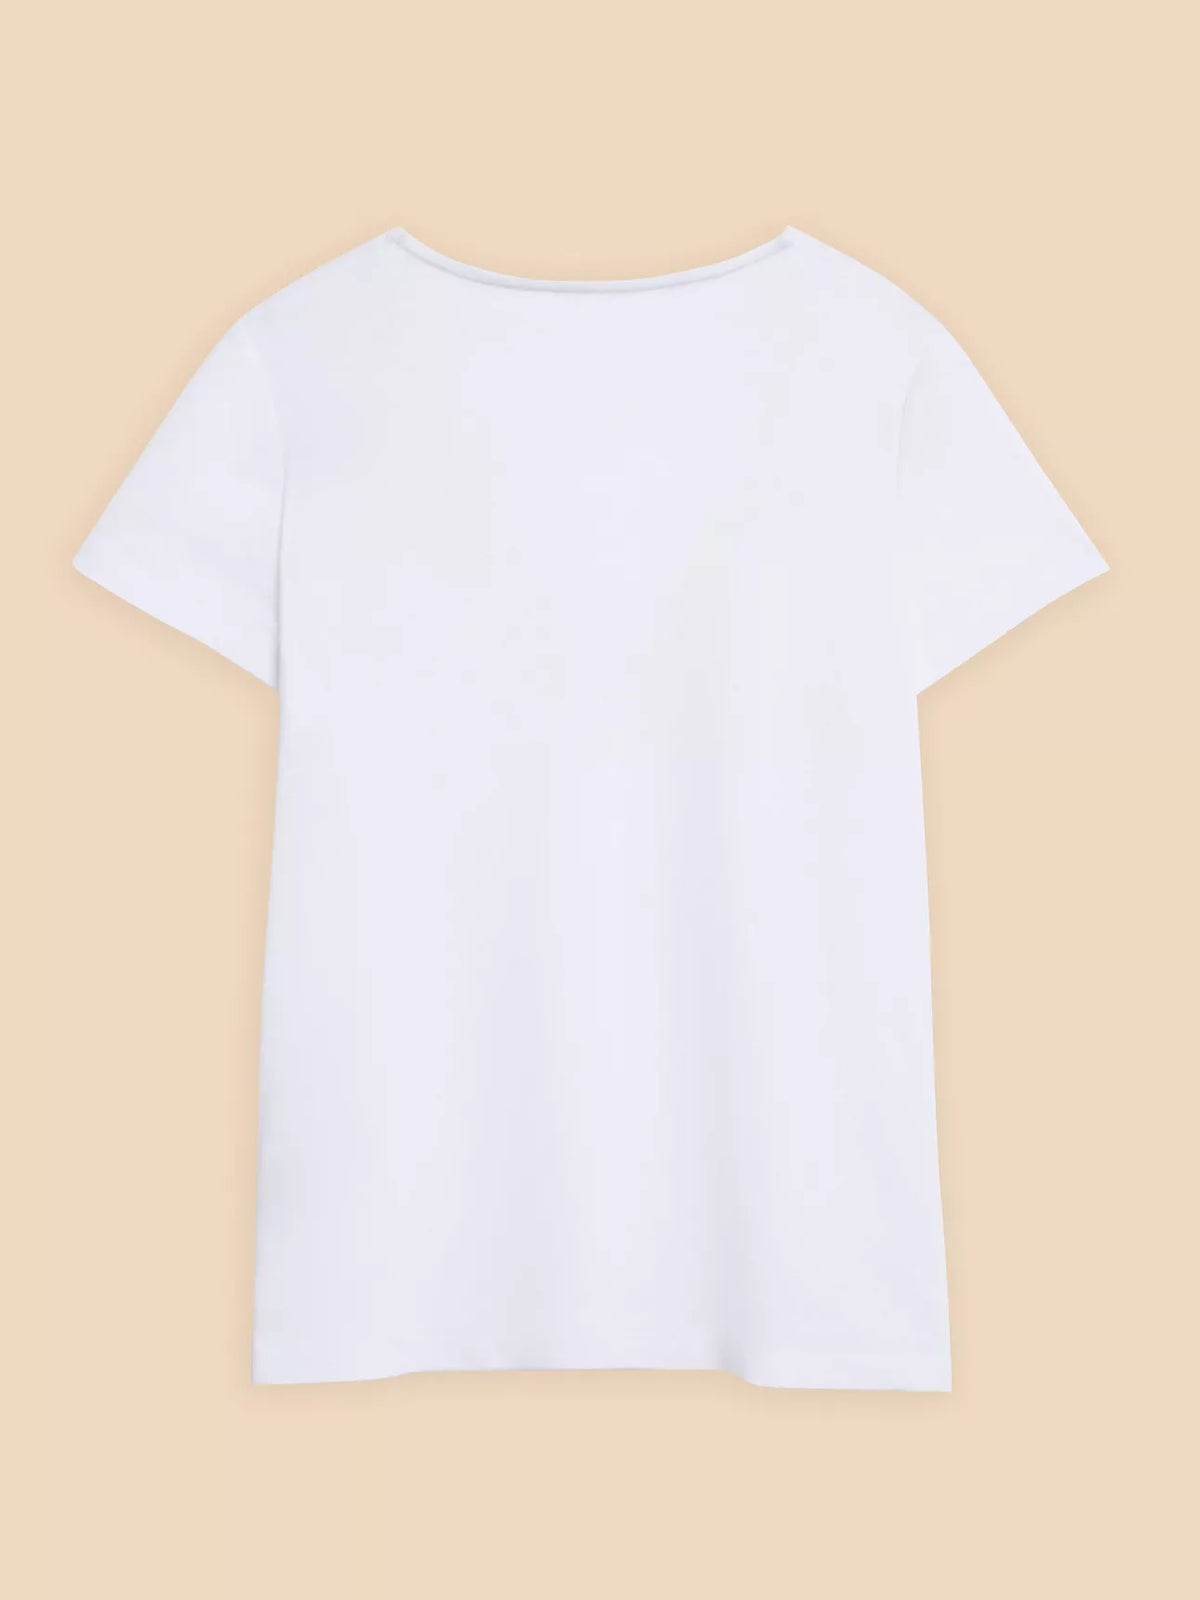 440832 BRILLIANT WHITE T-shirt en dentelle White Stuff Ellie